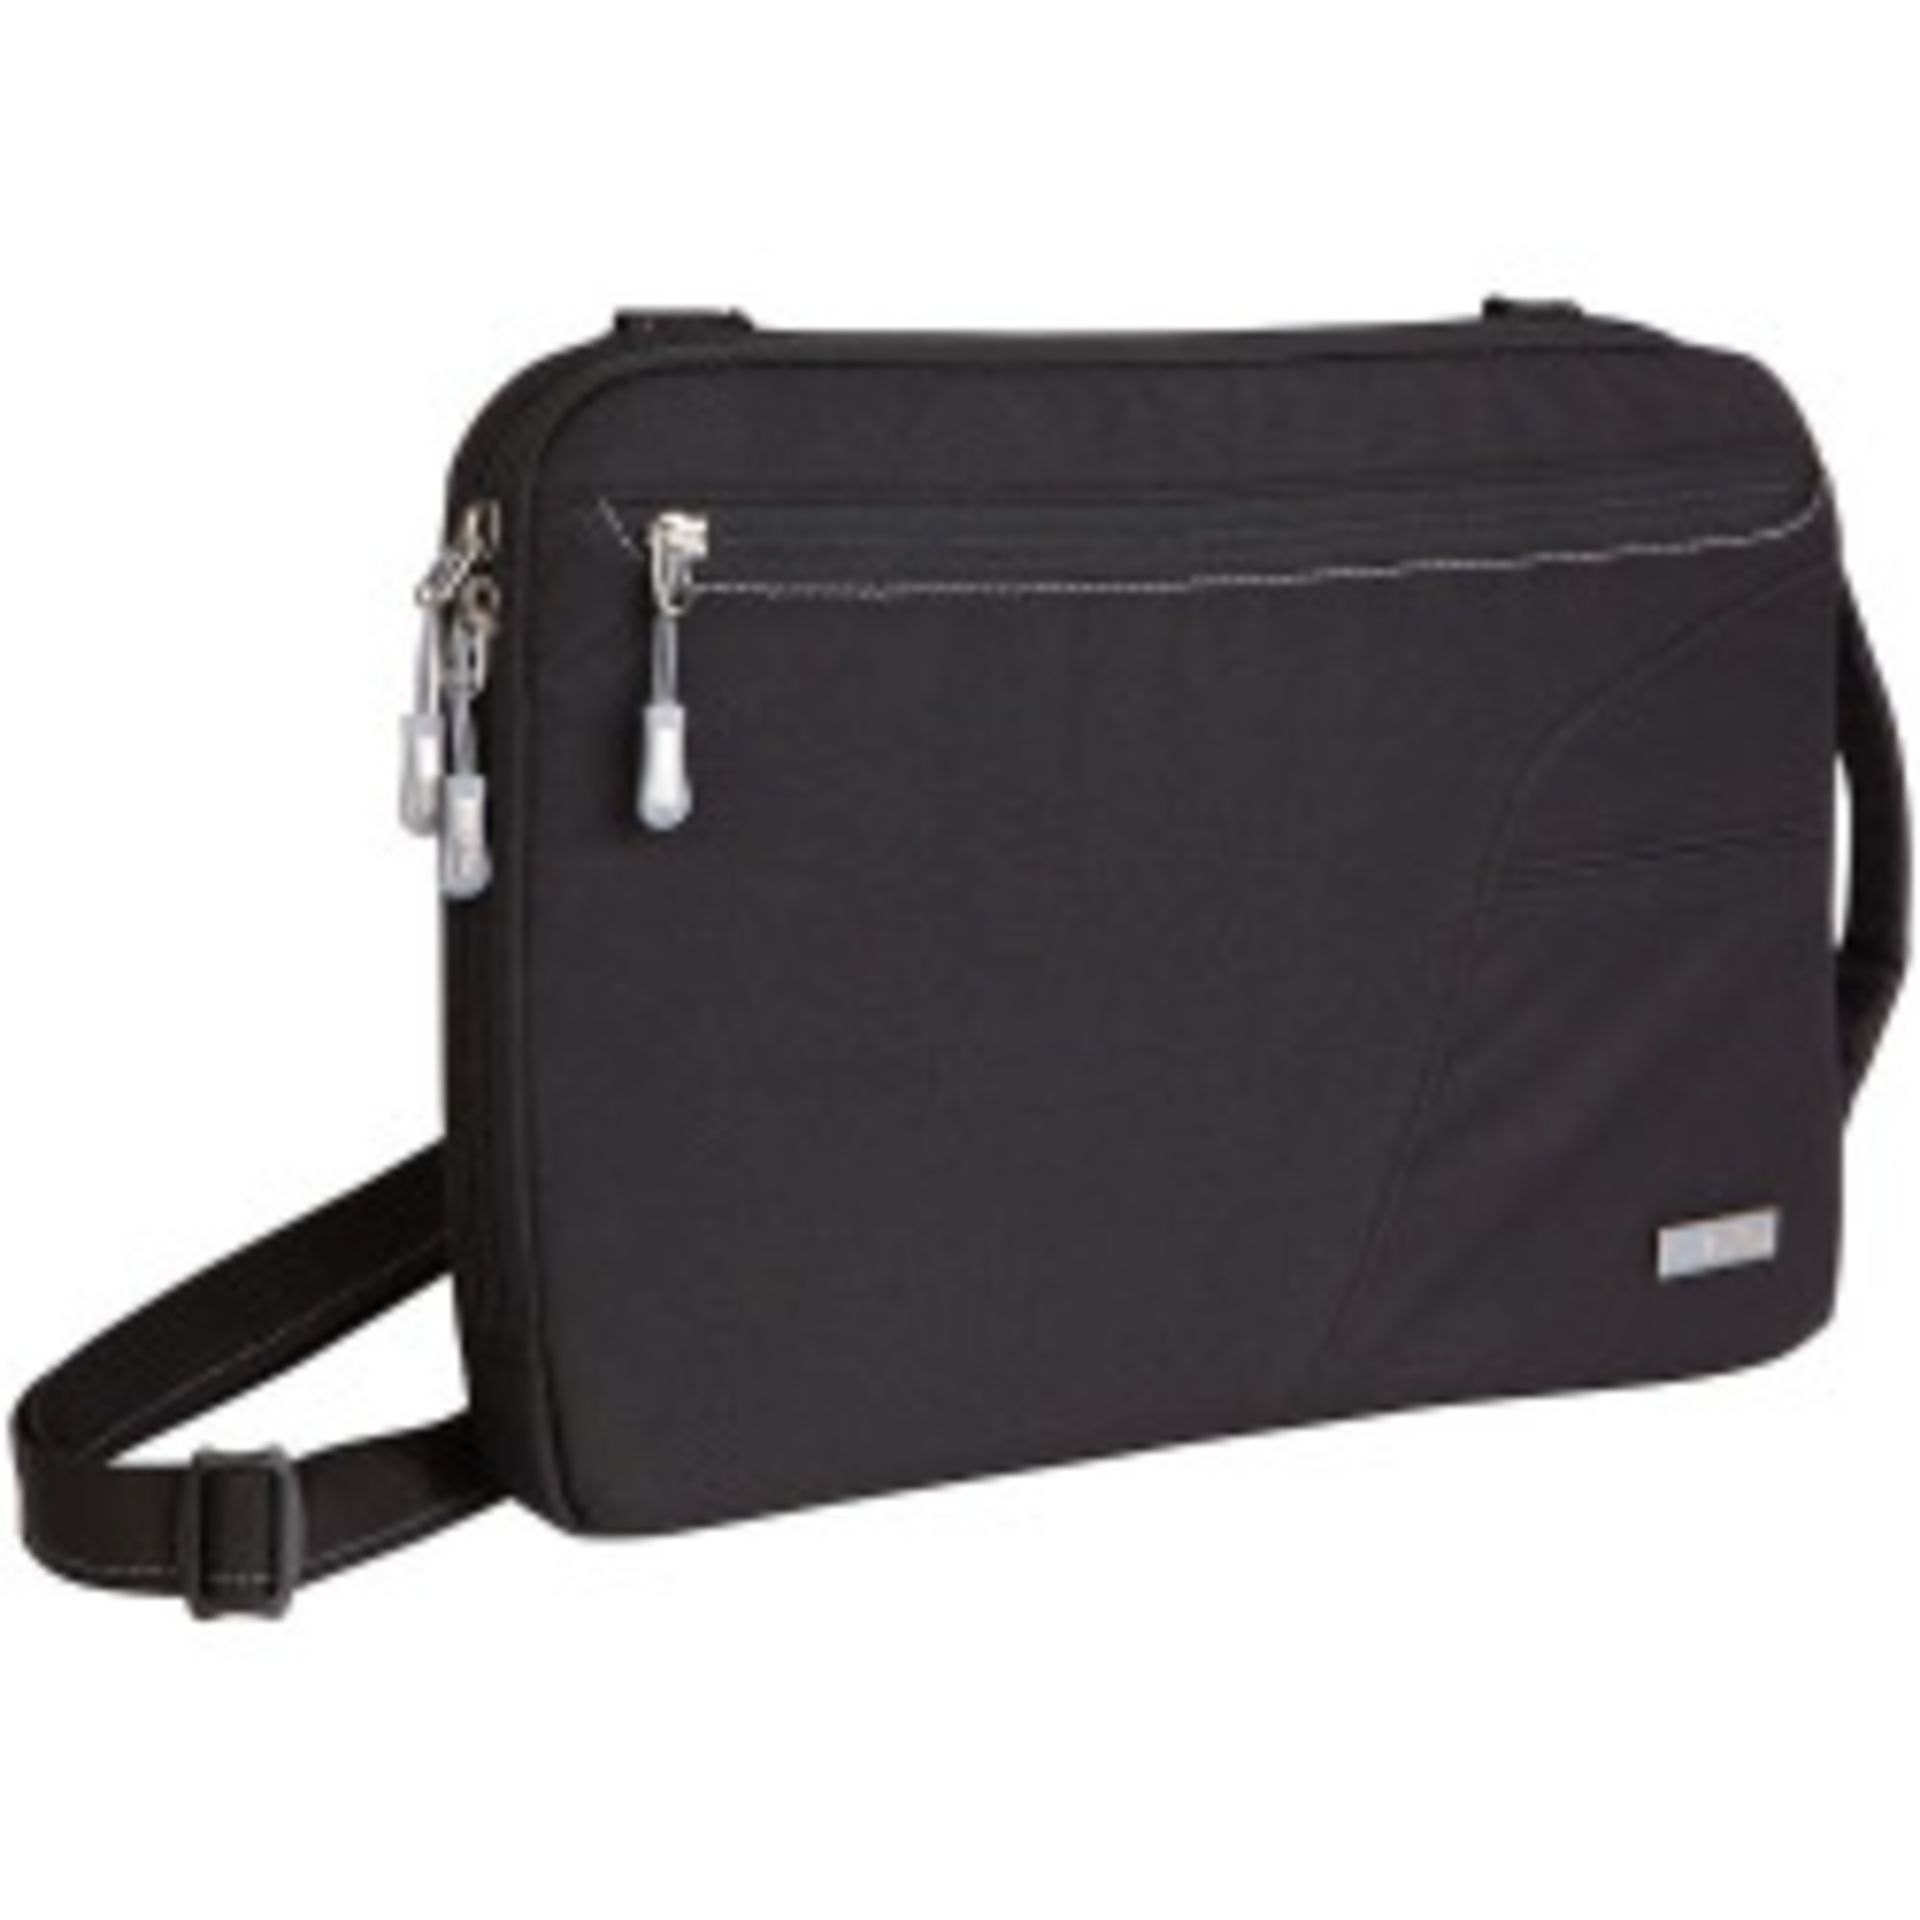 V Brand New STM Blazer Padded Sleeve - Bag For Laptops And Tablets 11" Black With Removable Shoulder - Image 2 of 4